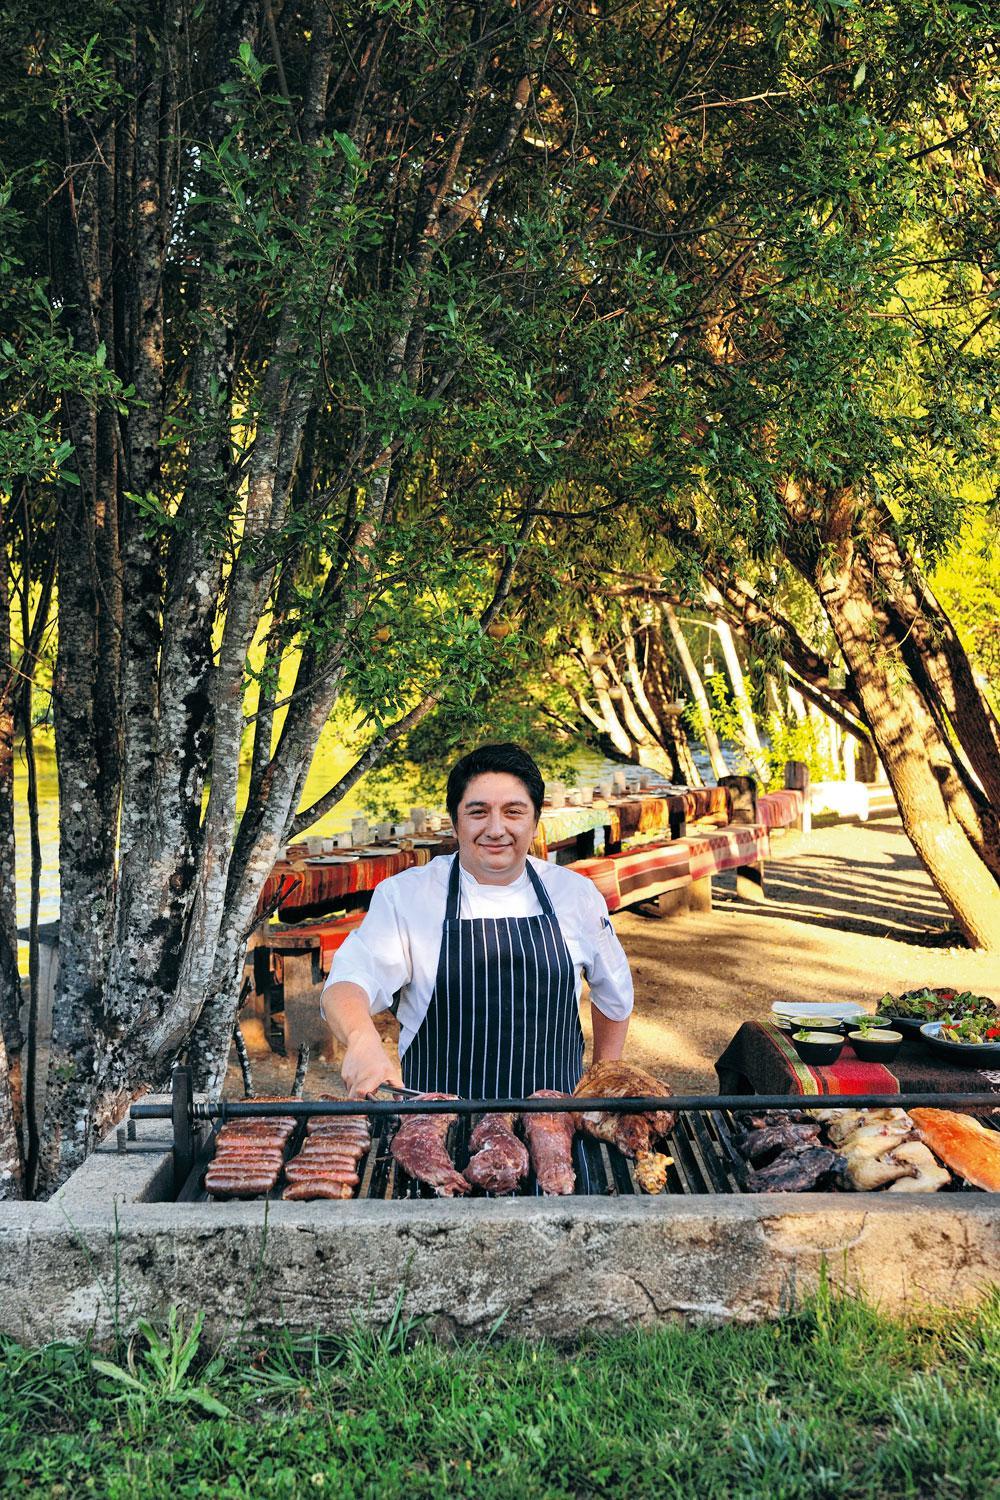 Een waar culinair genot én erg gezellig: een typische Chileense parilla ofte barbecue.